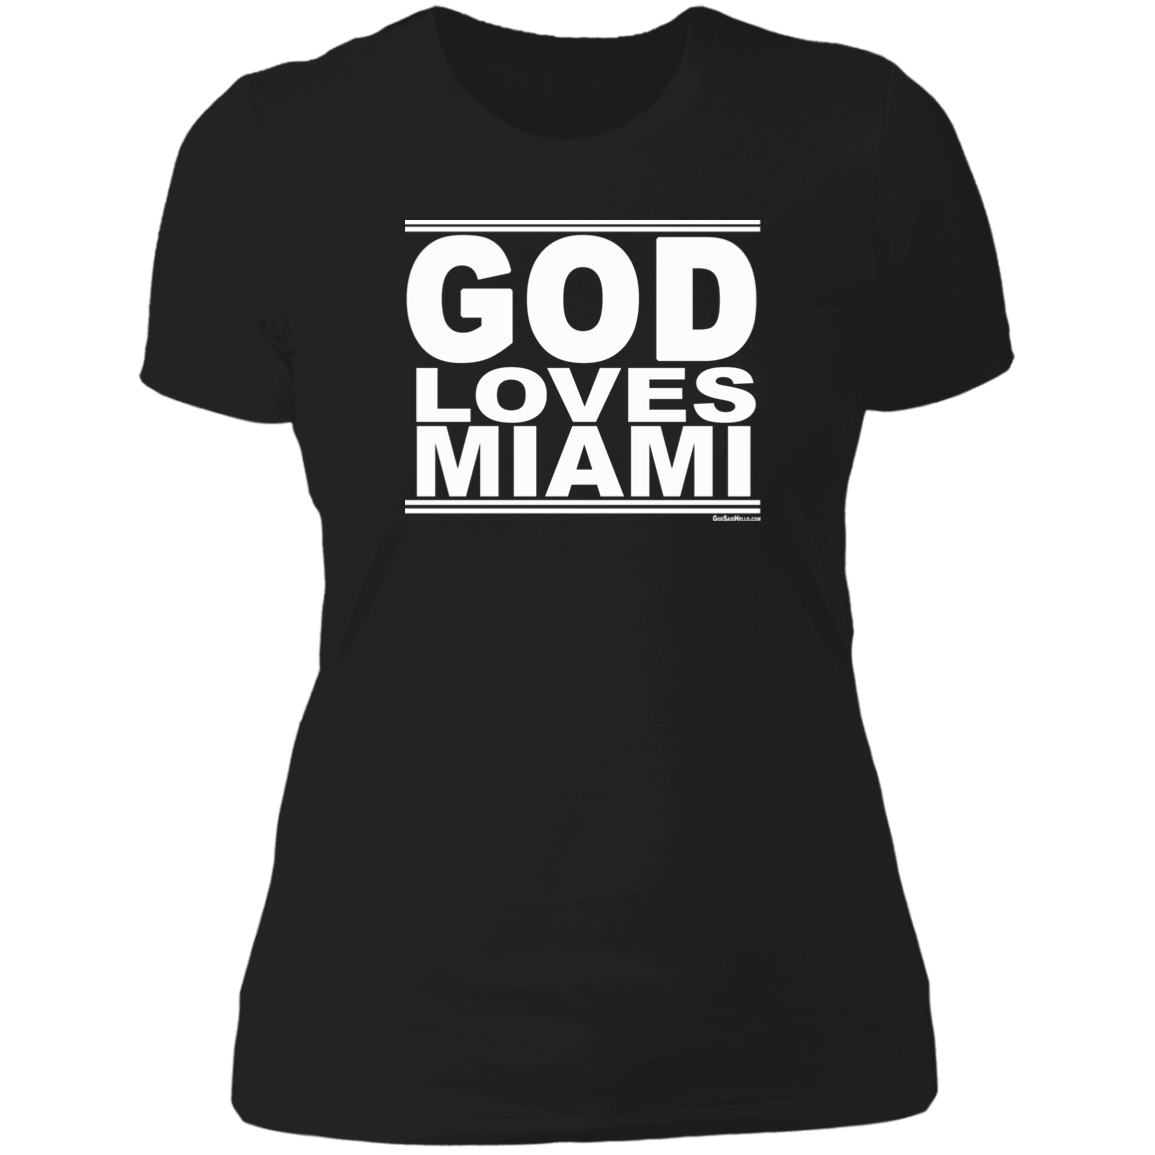 #GodLovesMiami - Women's Shortsleeve Tee